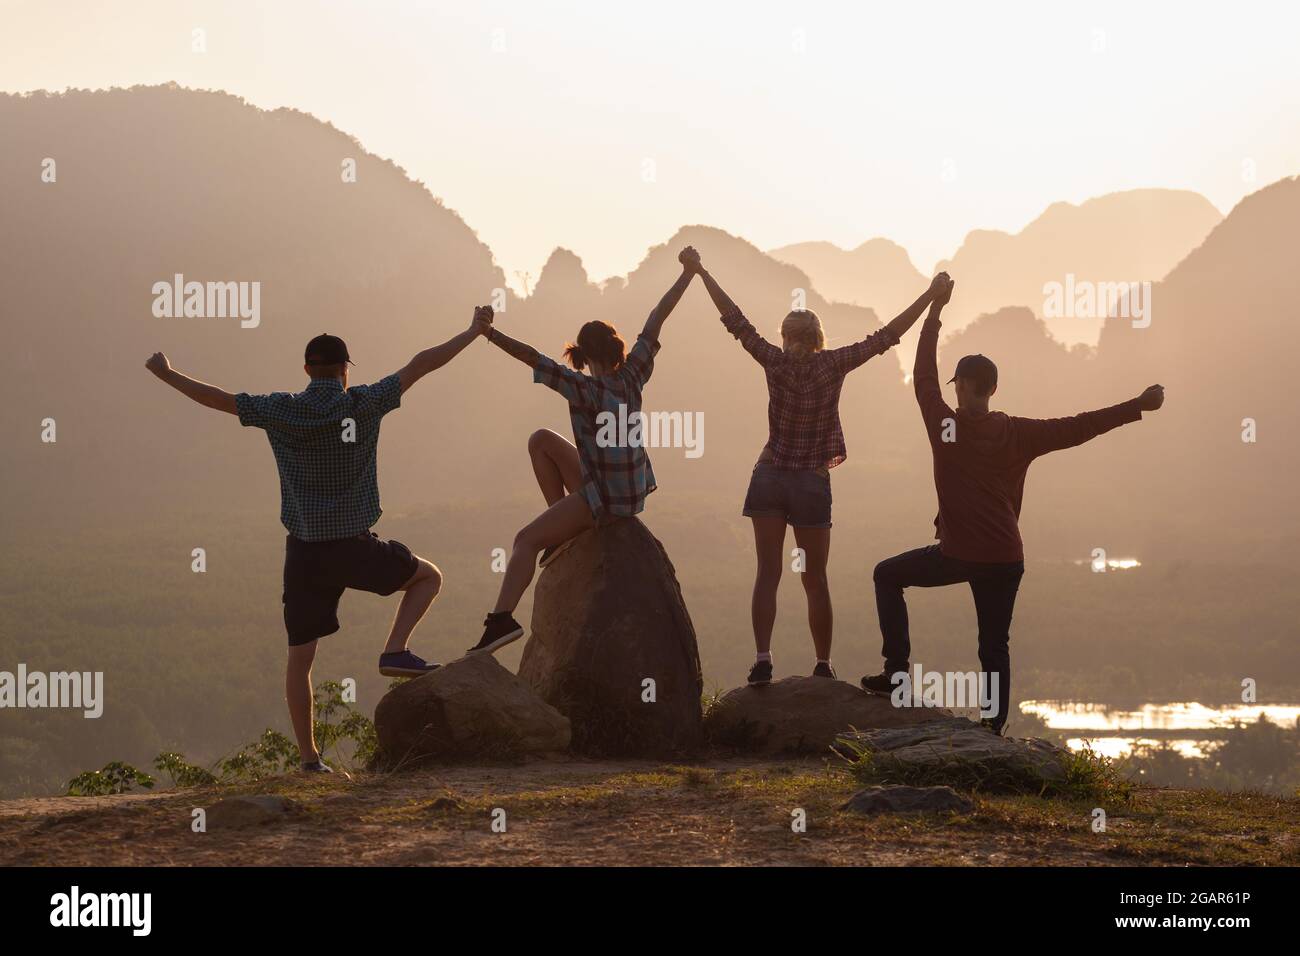 Zweisamkeit-Konzept mit vier Silhouetten von jungen Freunden, die gegen Sonnenaufgang und Berge stehen Stockfoto